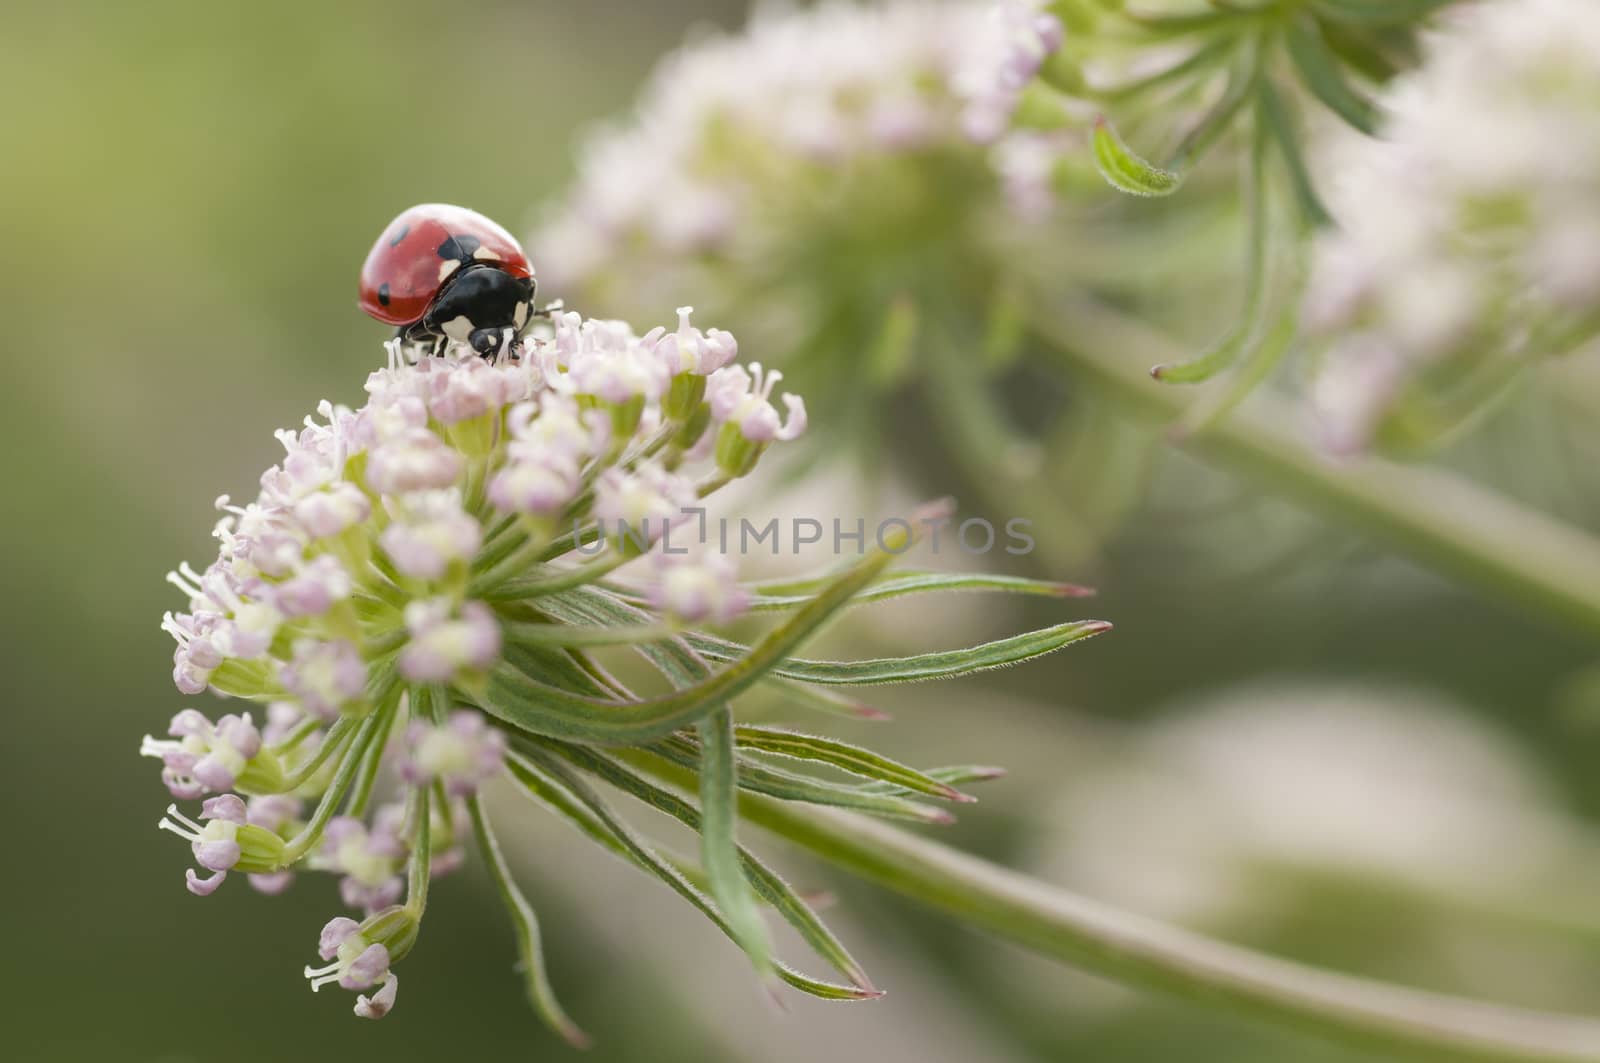 Ladybug, ladybird, Coccinella septempunctata on white flowers